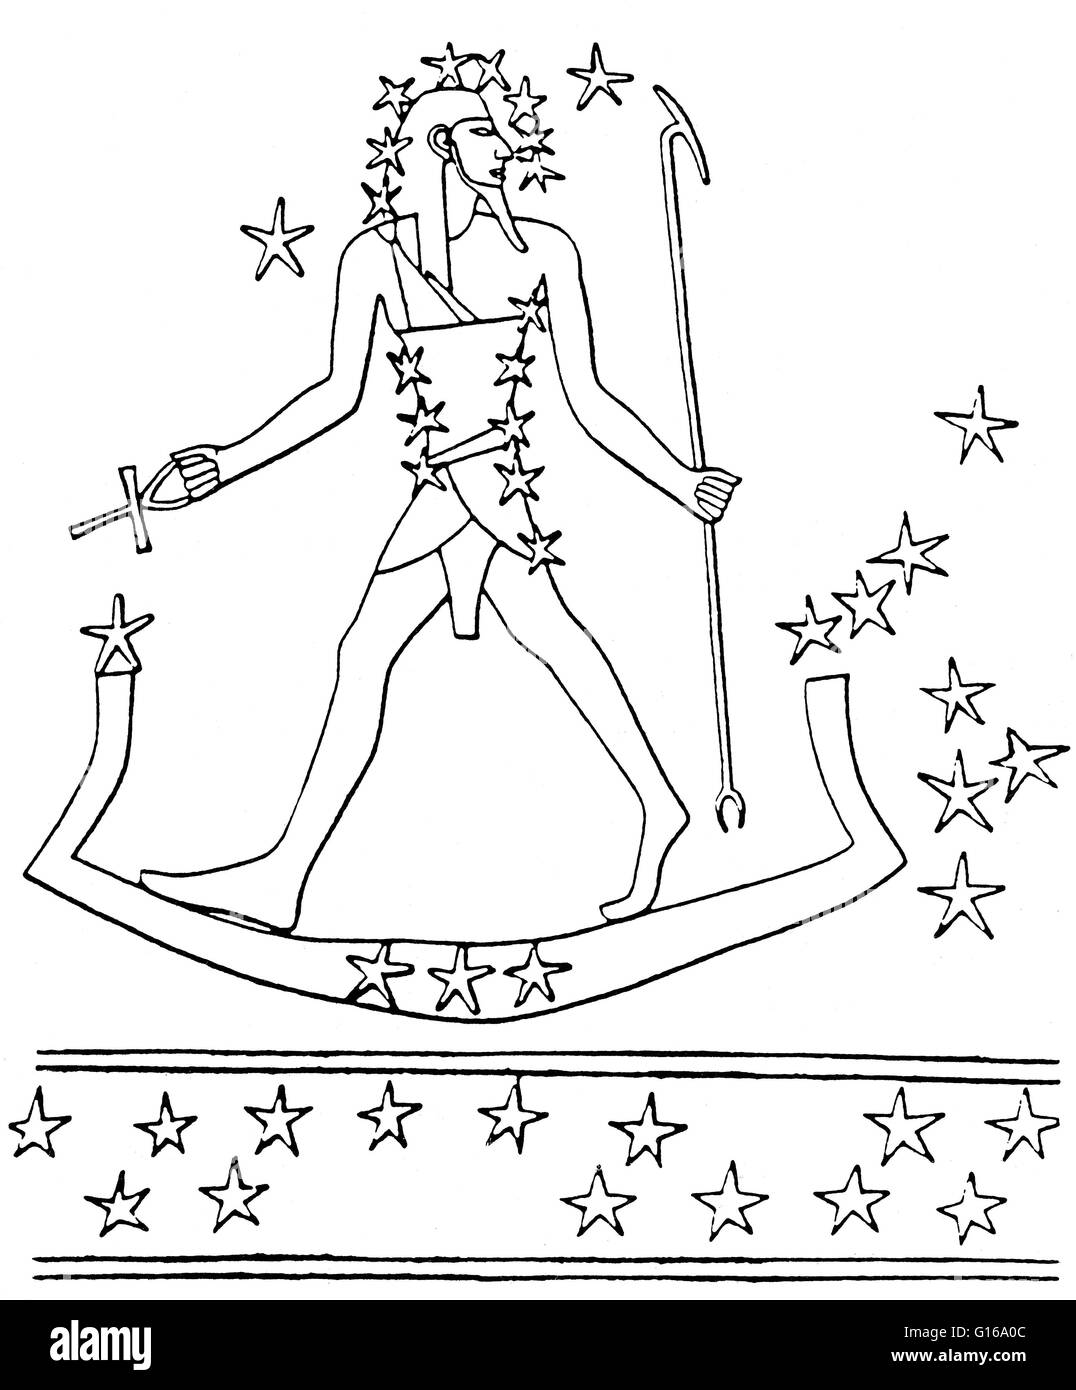 Osiris-Orion viaggia attraverso il cielo sulla sacra barca (stelle di Lepus). Da una stella mappa nella tomba di Montemhet a Luxor, circa 650 BC. Le stelle di Orione sono stati associati a Osiride, il dio-sole di rinascita e l'aldilà, dagli antichi egizi. Orion Foto Stock